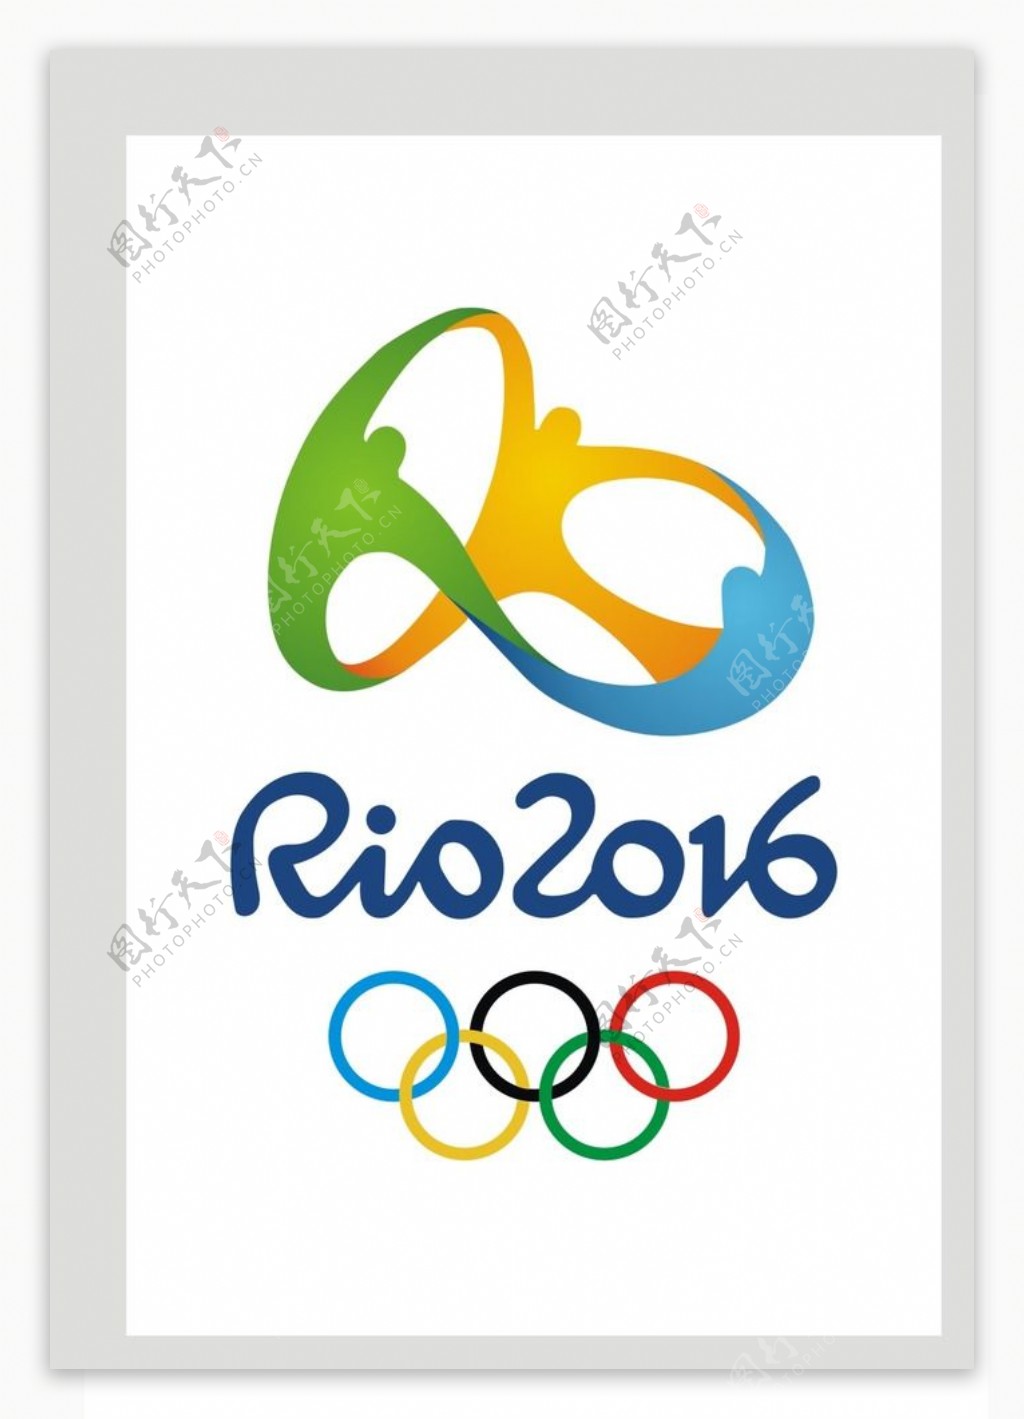 2016巴西奥运会会标图片